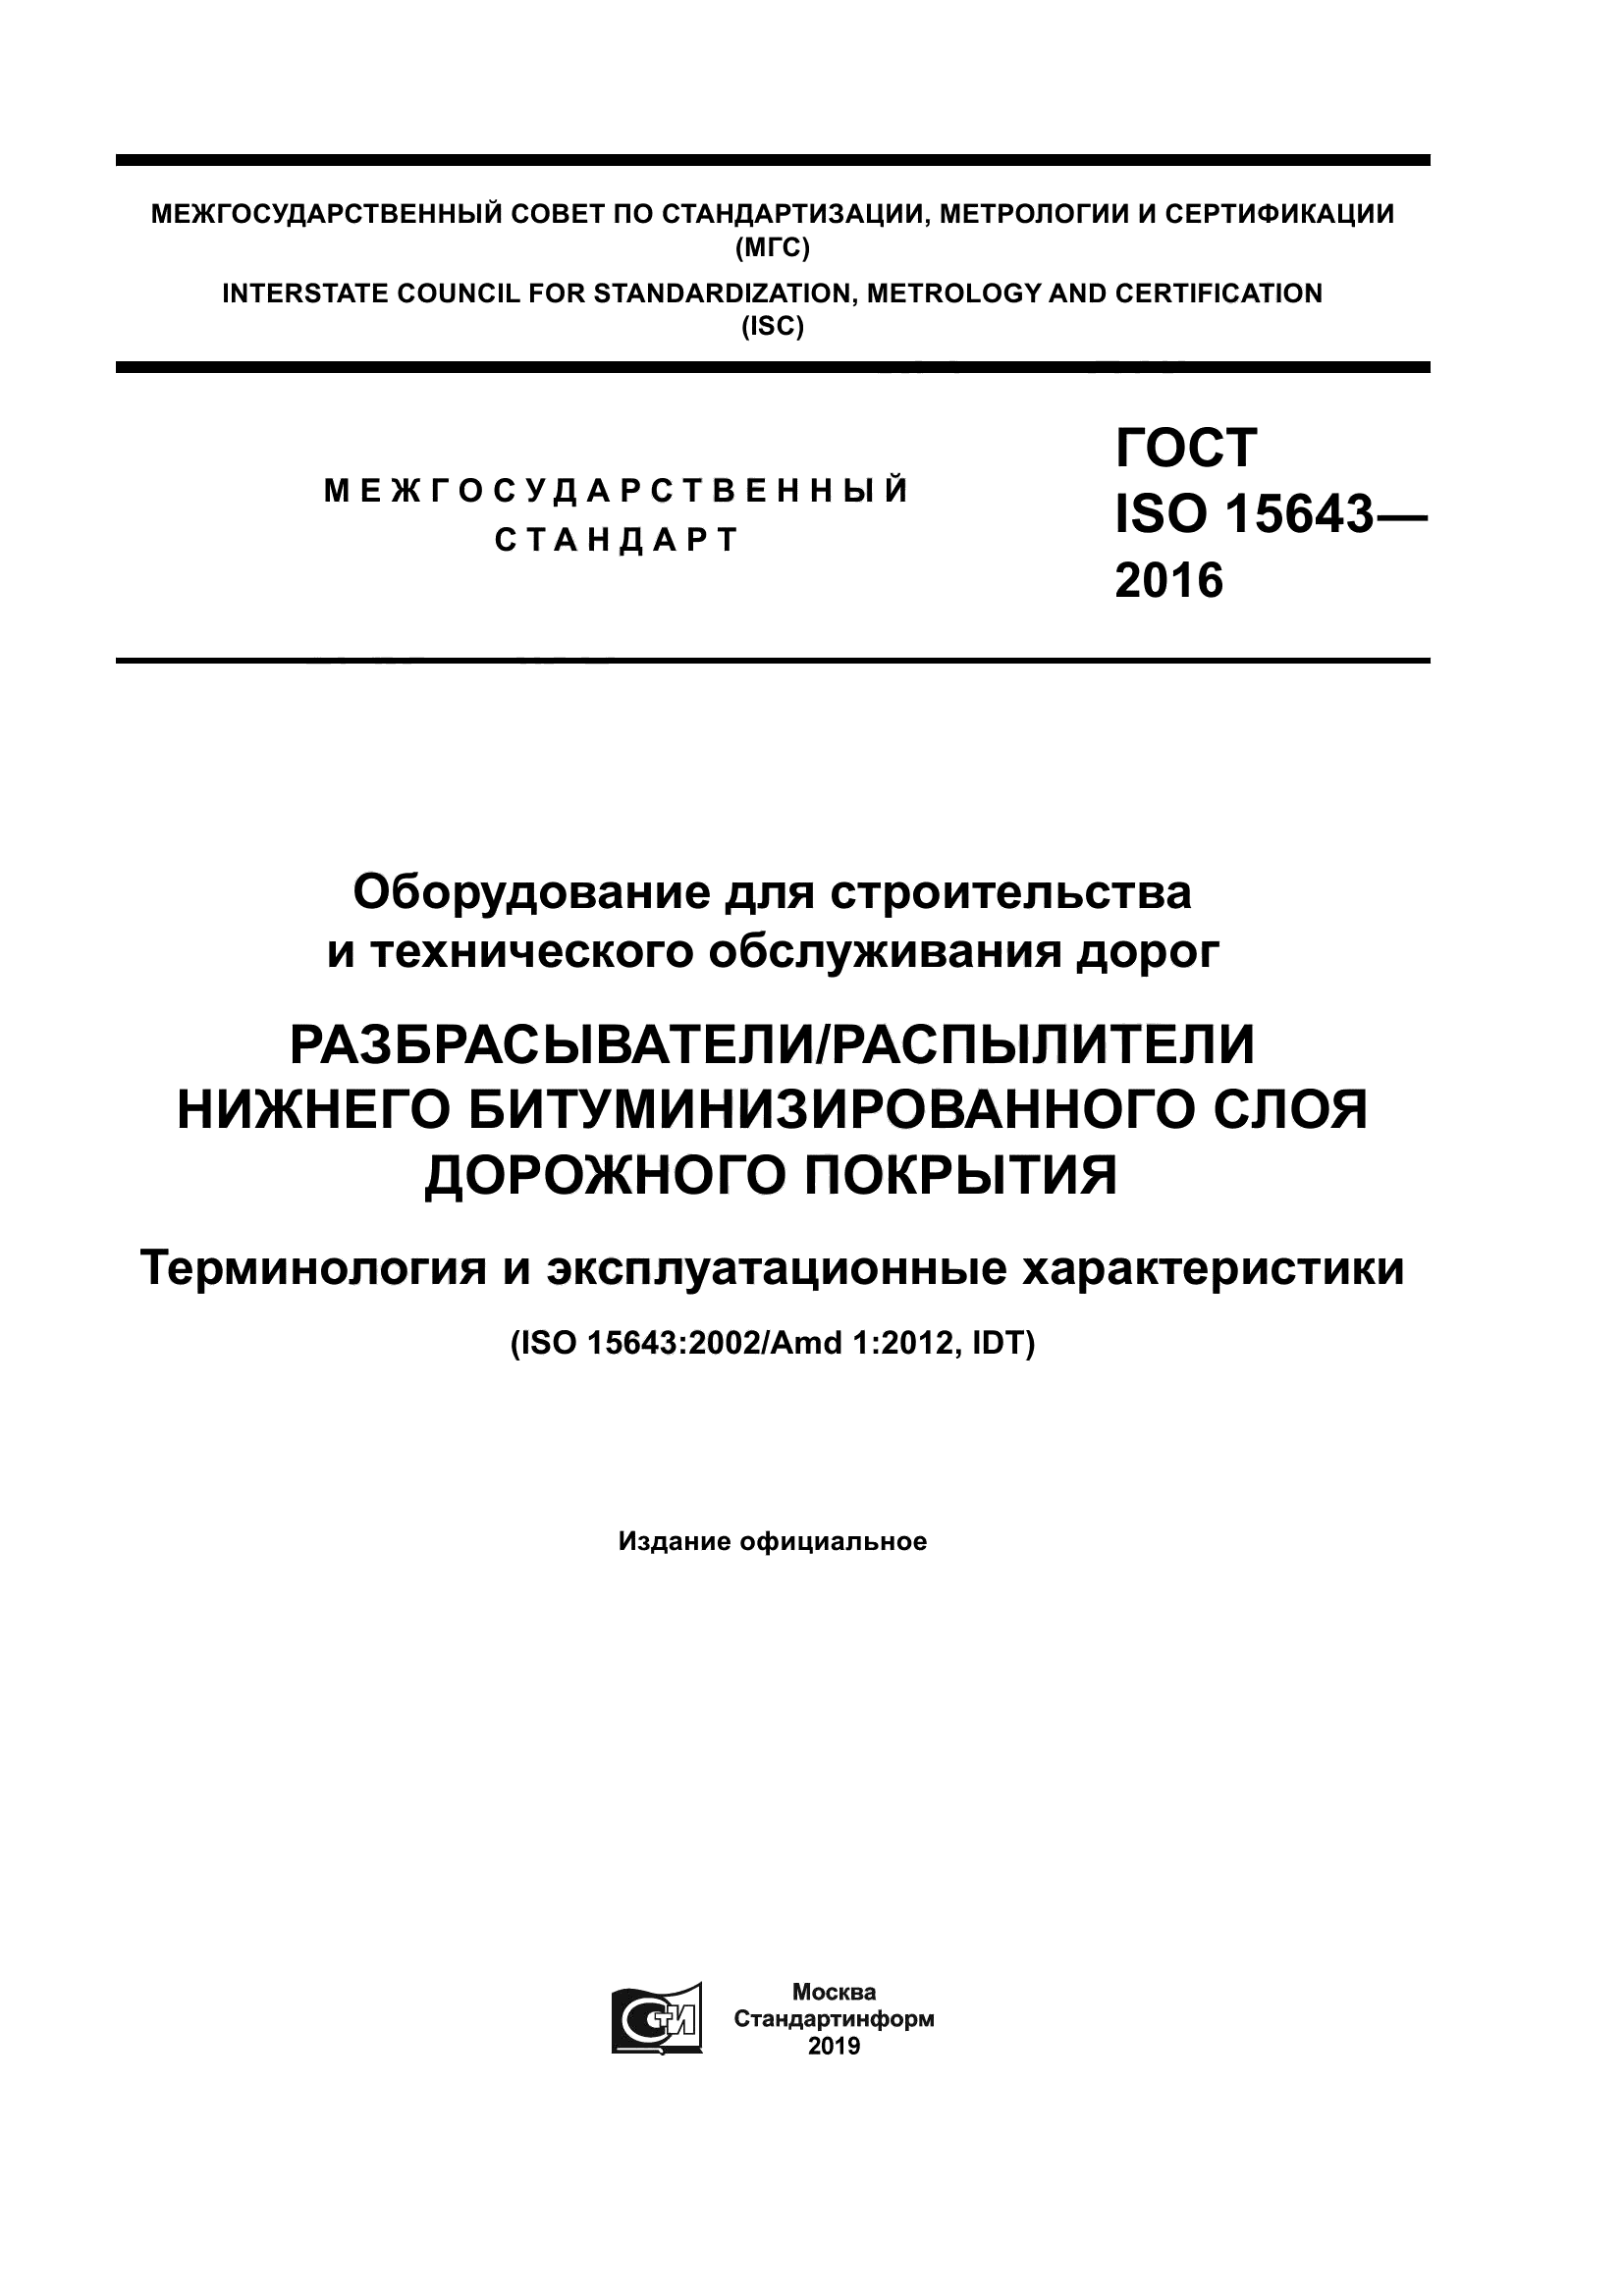 ГОСТ ISO 15643-2016